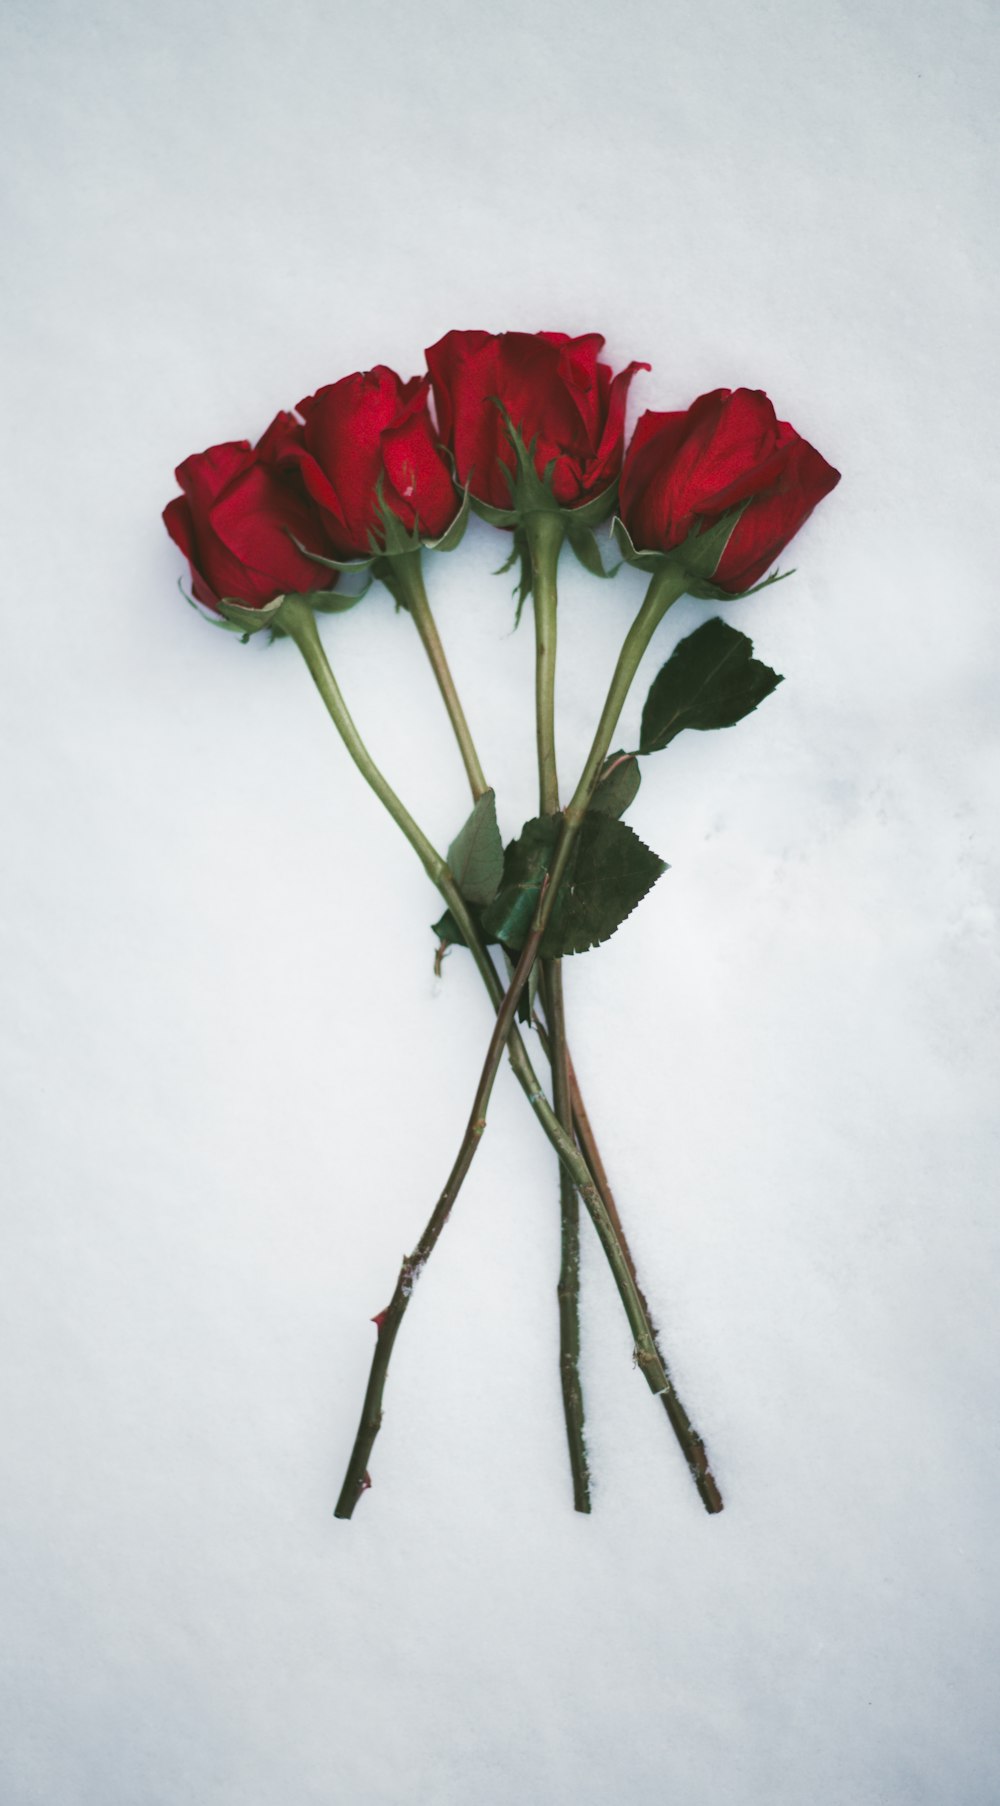 fleurs roses rouges sur une surface blanche